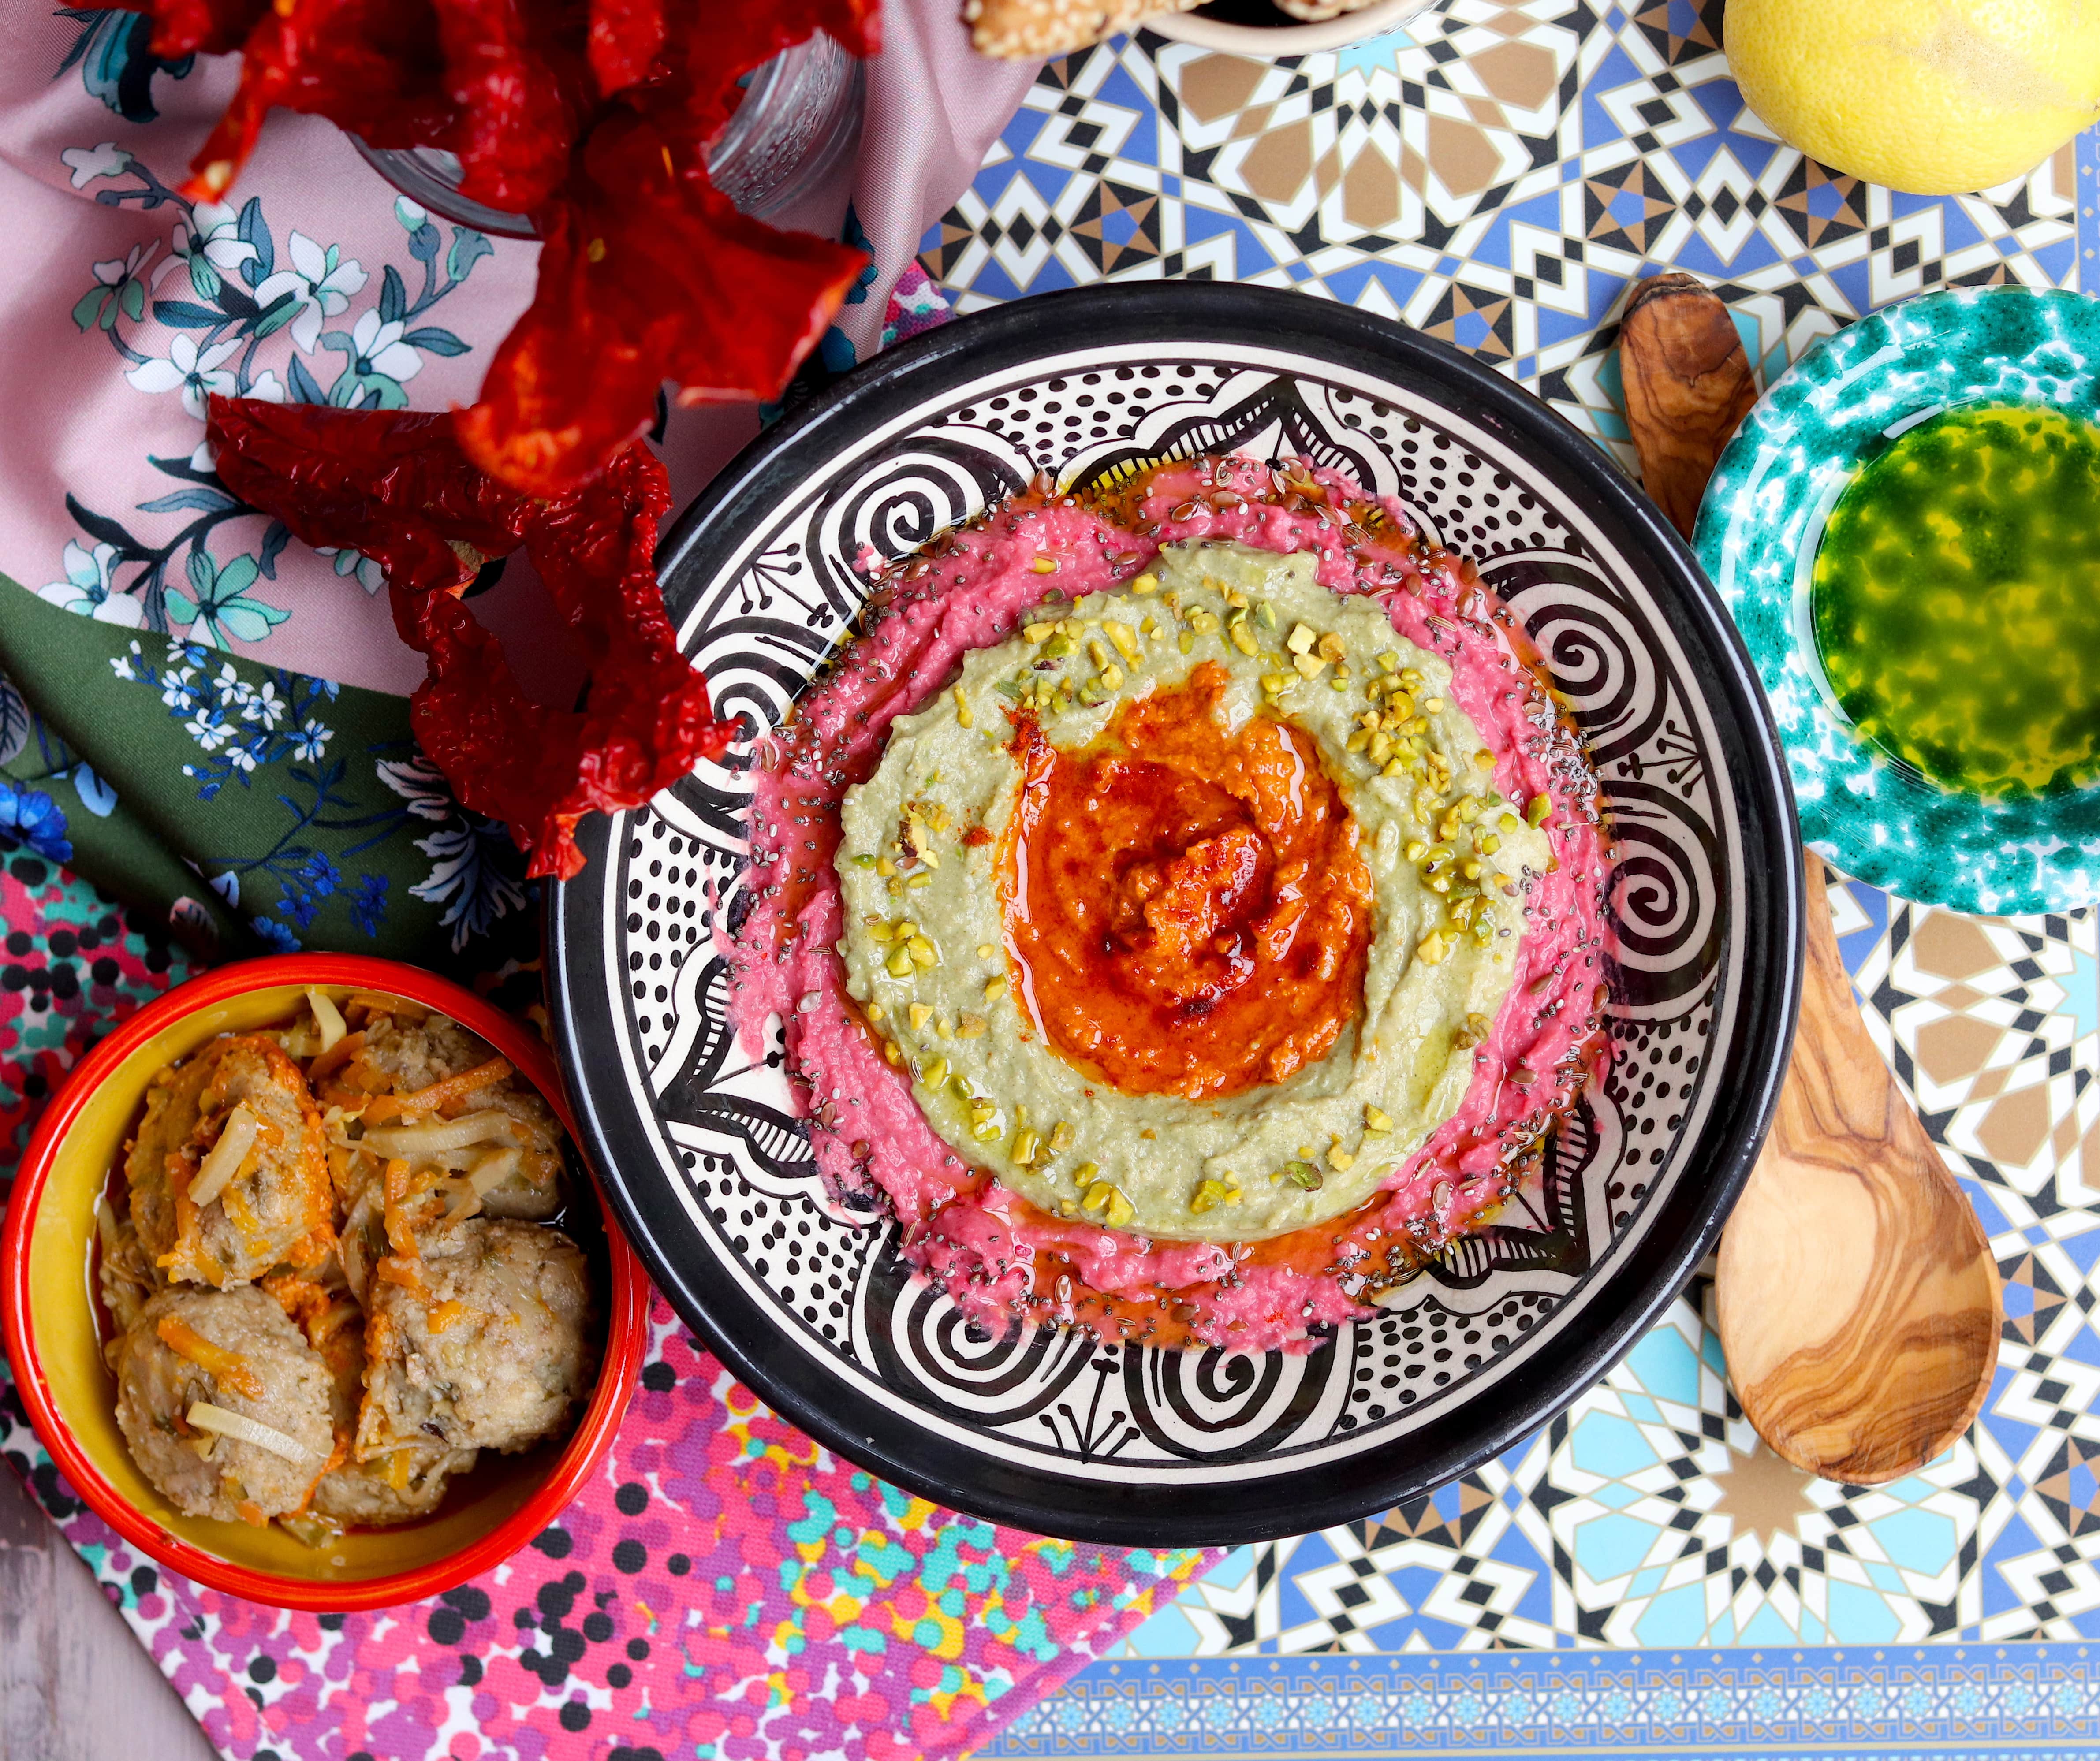 Hummus arcobaleno con crema di fave, Cruschi e polpette di avena